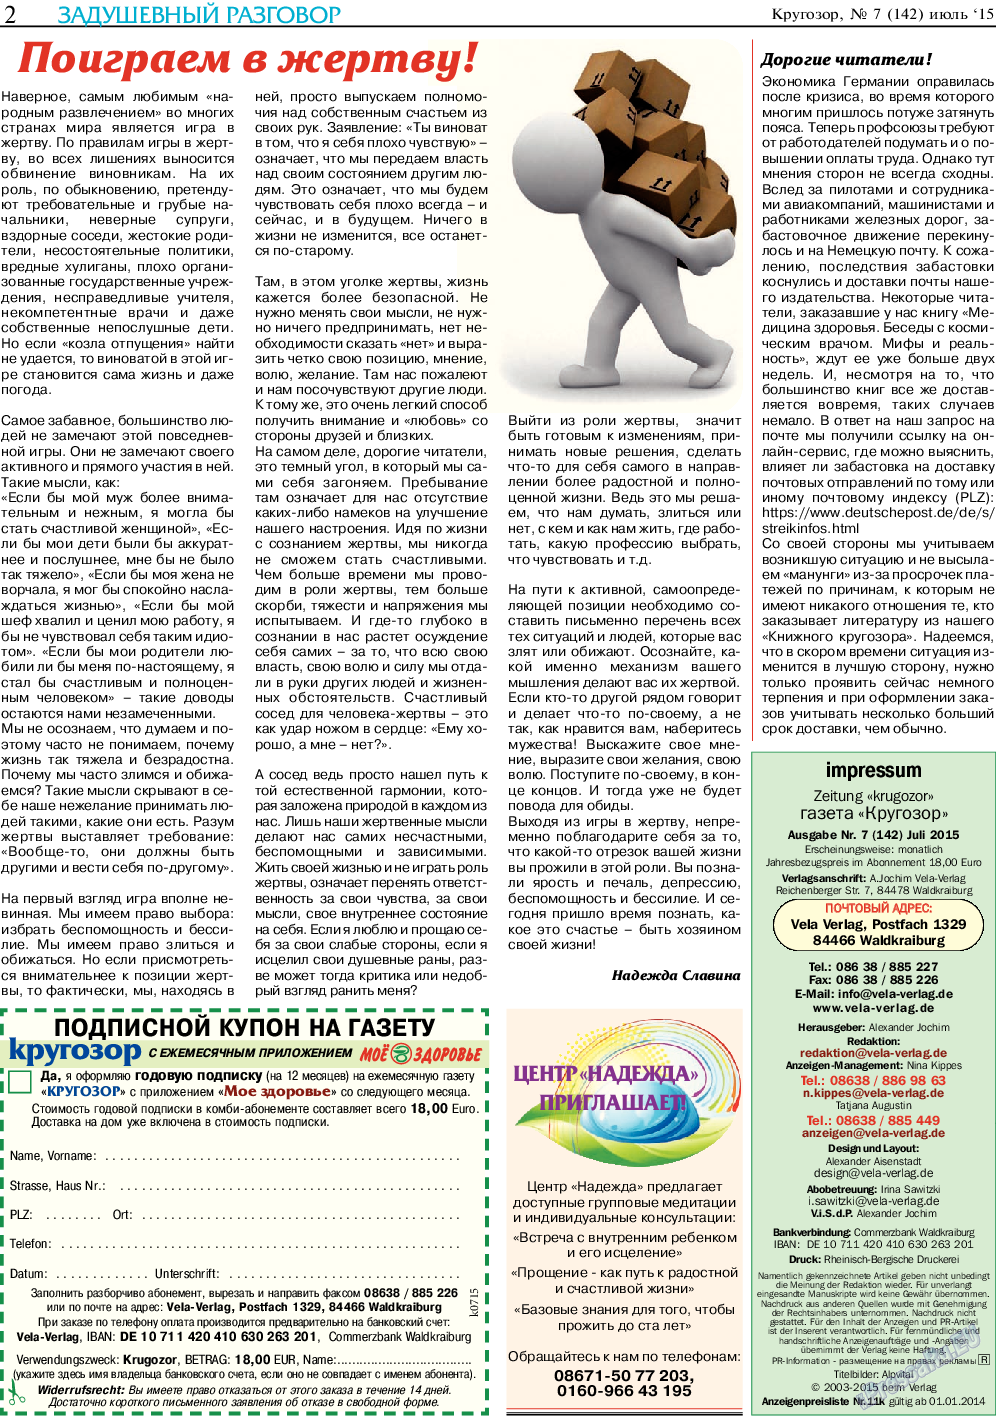 Кругозор (газета). 2015 год, номер 7, стр. 2